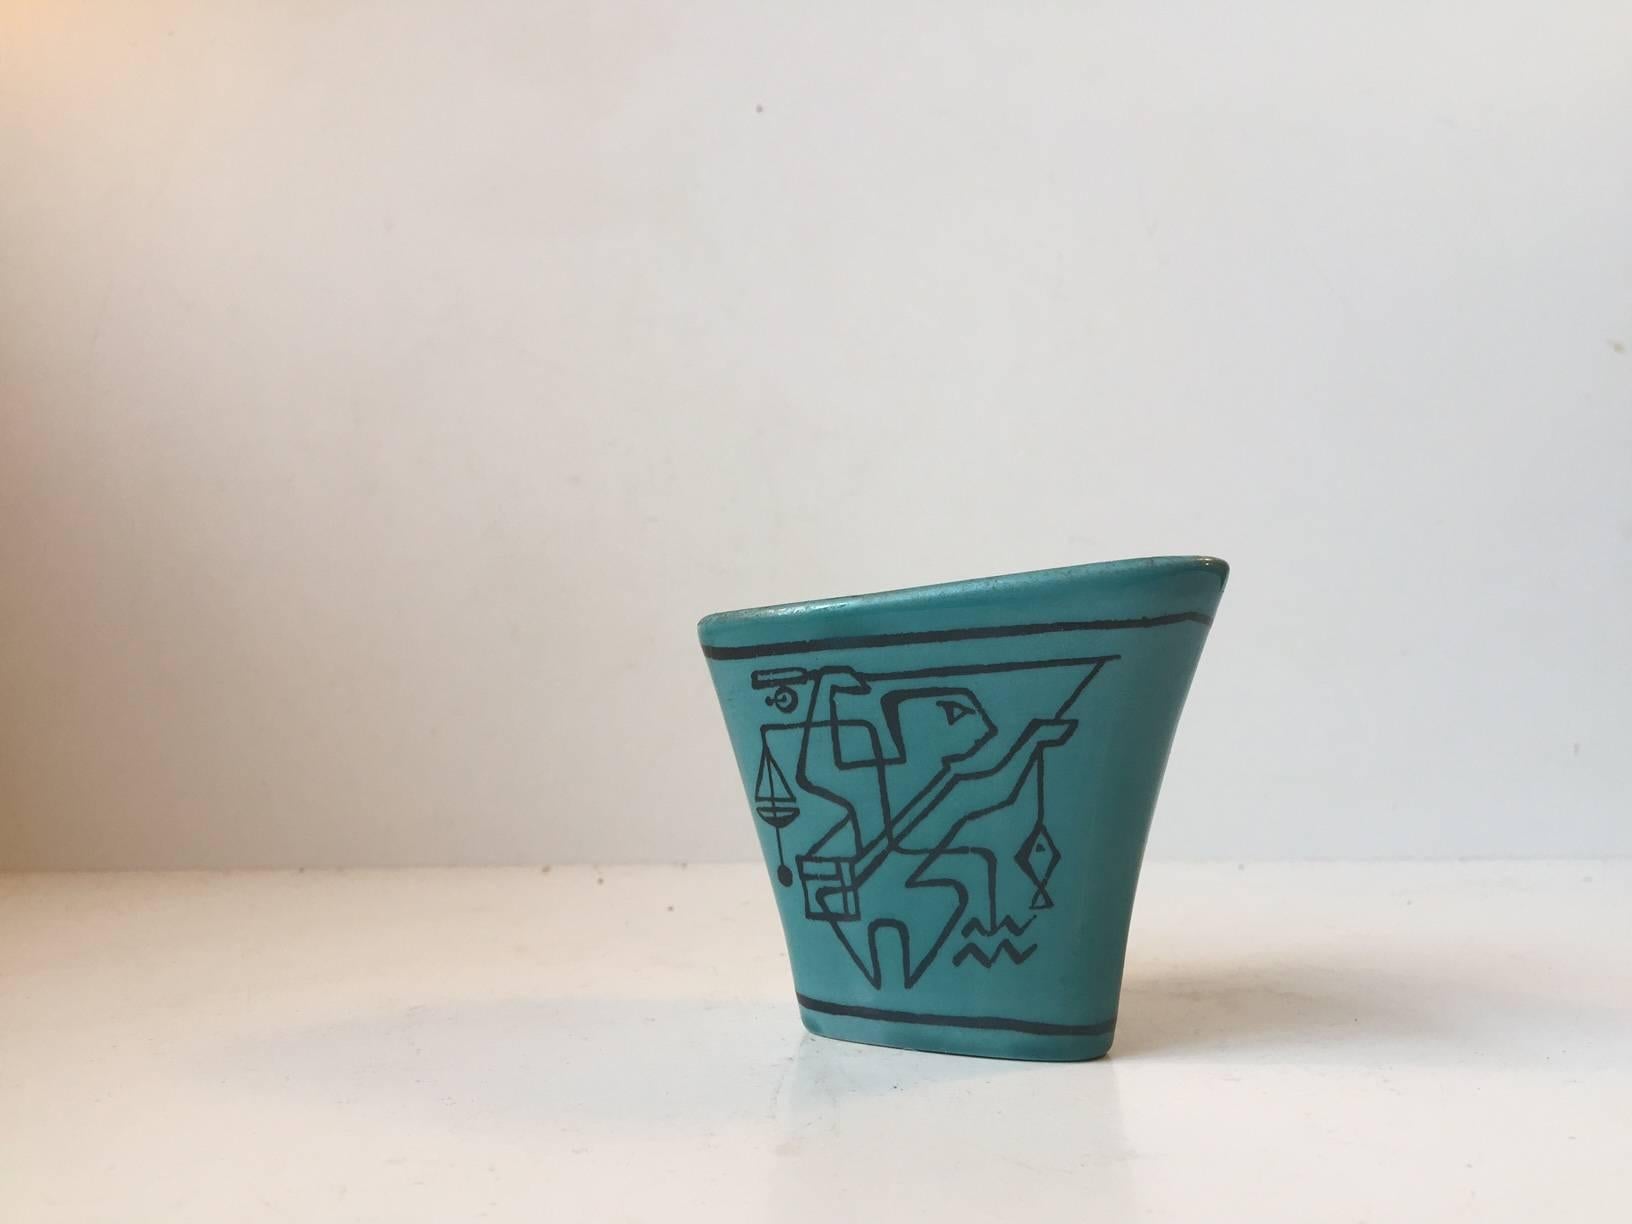 Ce petit vase turquoise Unika/unique a été conçu par Gunnar Nylund. Il comporte deux faces différentes, chacune présentant des motifs d'avant-garde faits à la main, inspirés du mouvement danois Cobra et de Picasso. Le vase porte la signature de